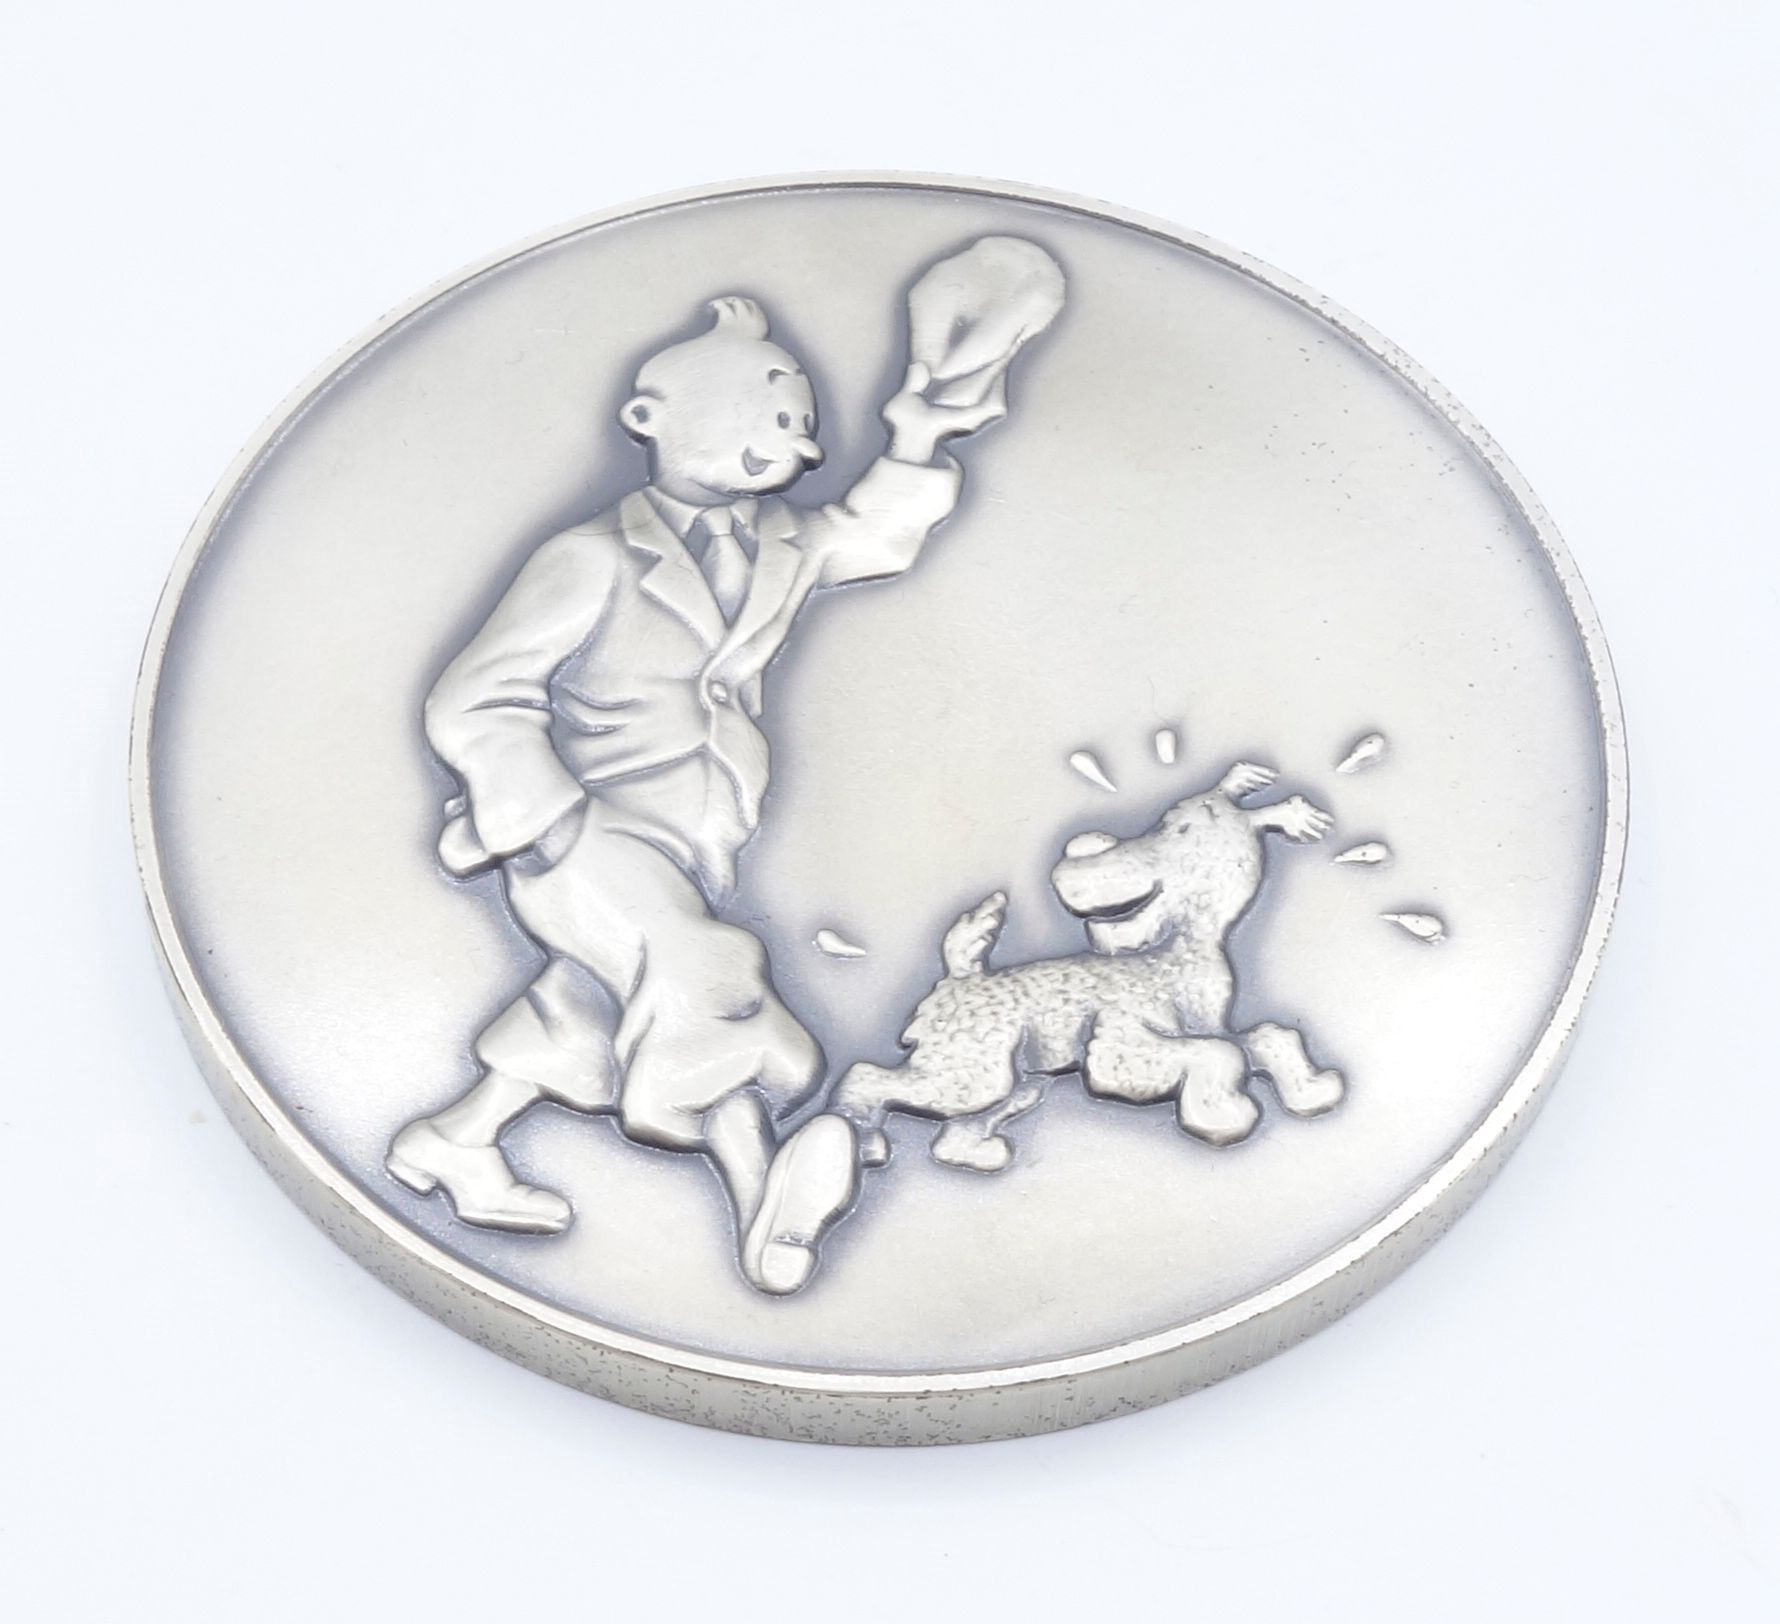 HERGÉ 
丁丁，银质镇纸（250克银），由比利时皇家造币厂发行，1996年，编号/1000。